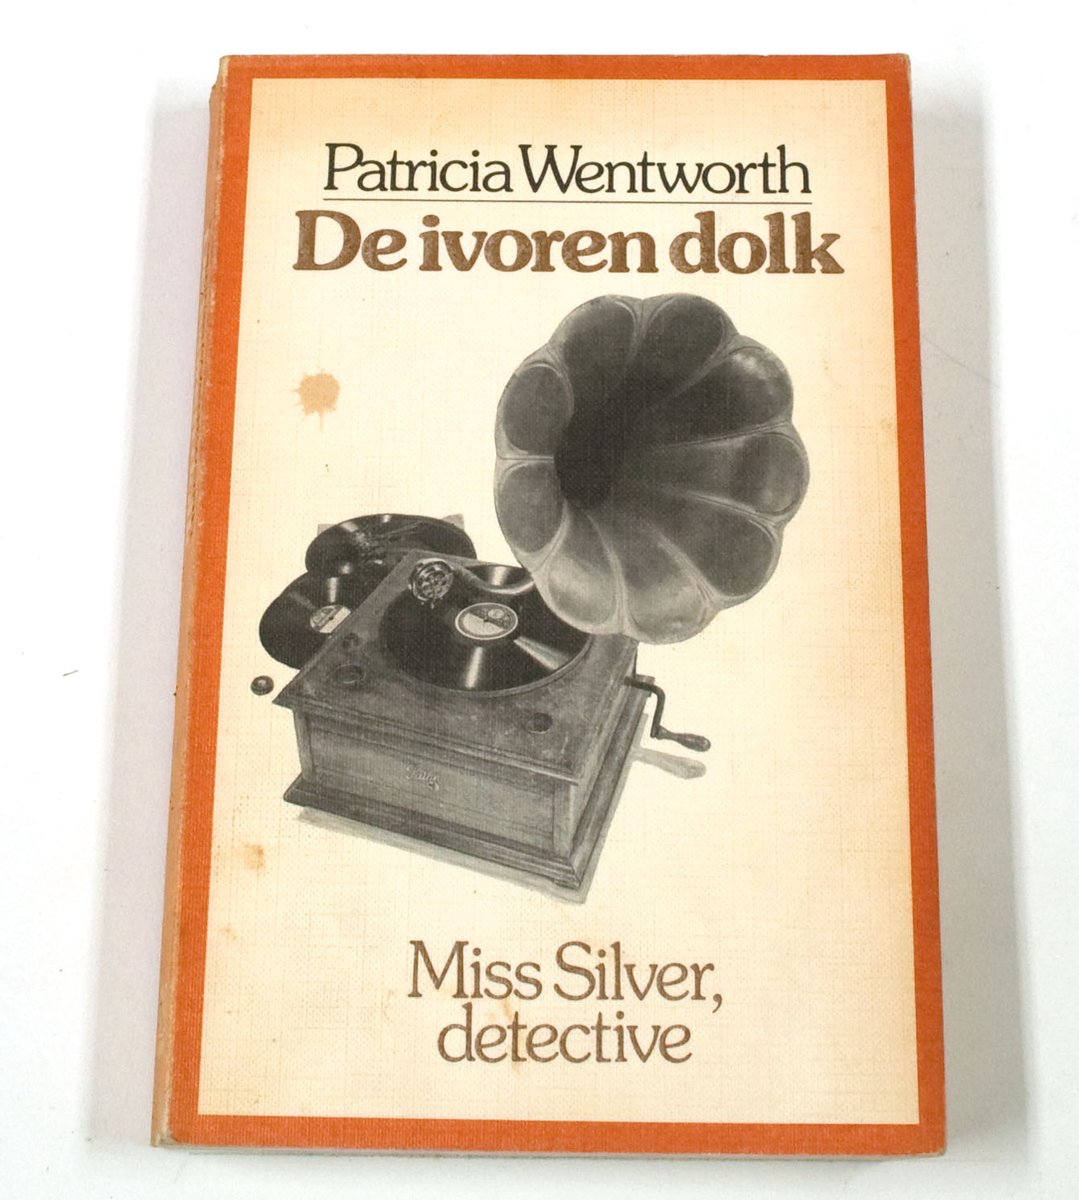 Ivoren dolk, Miss Silver detective